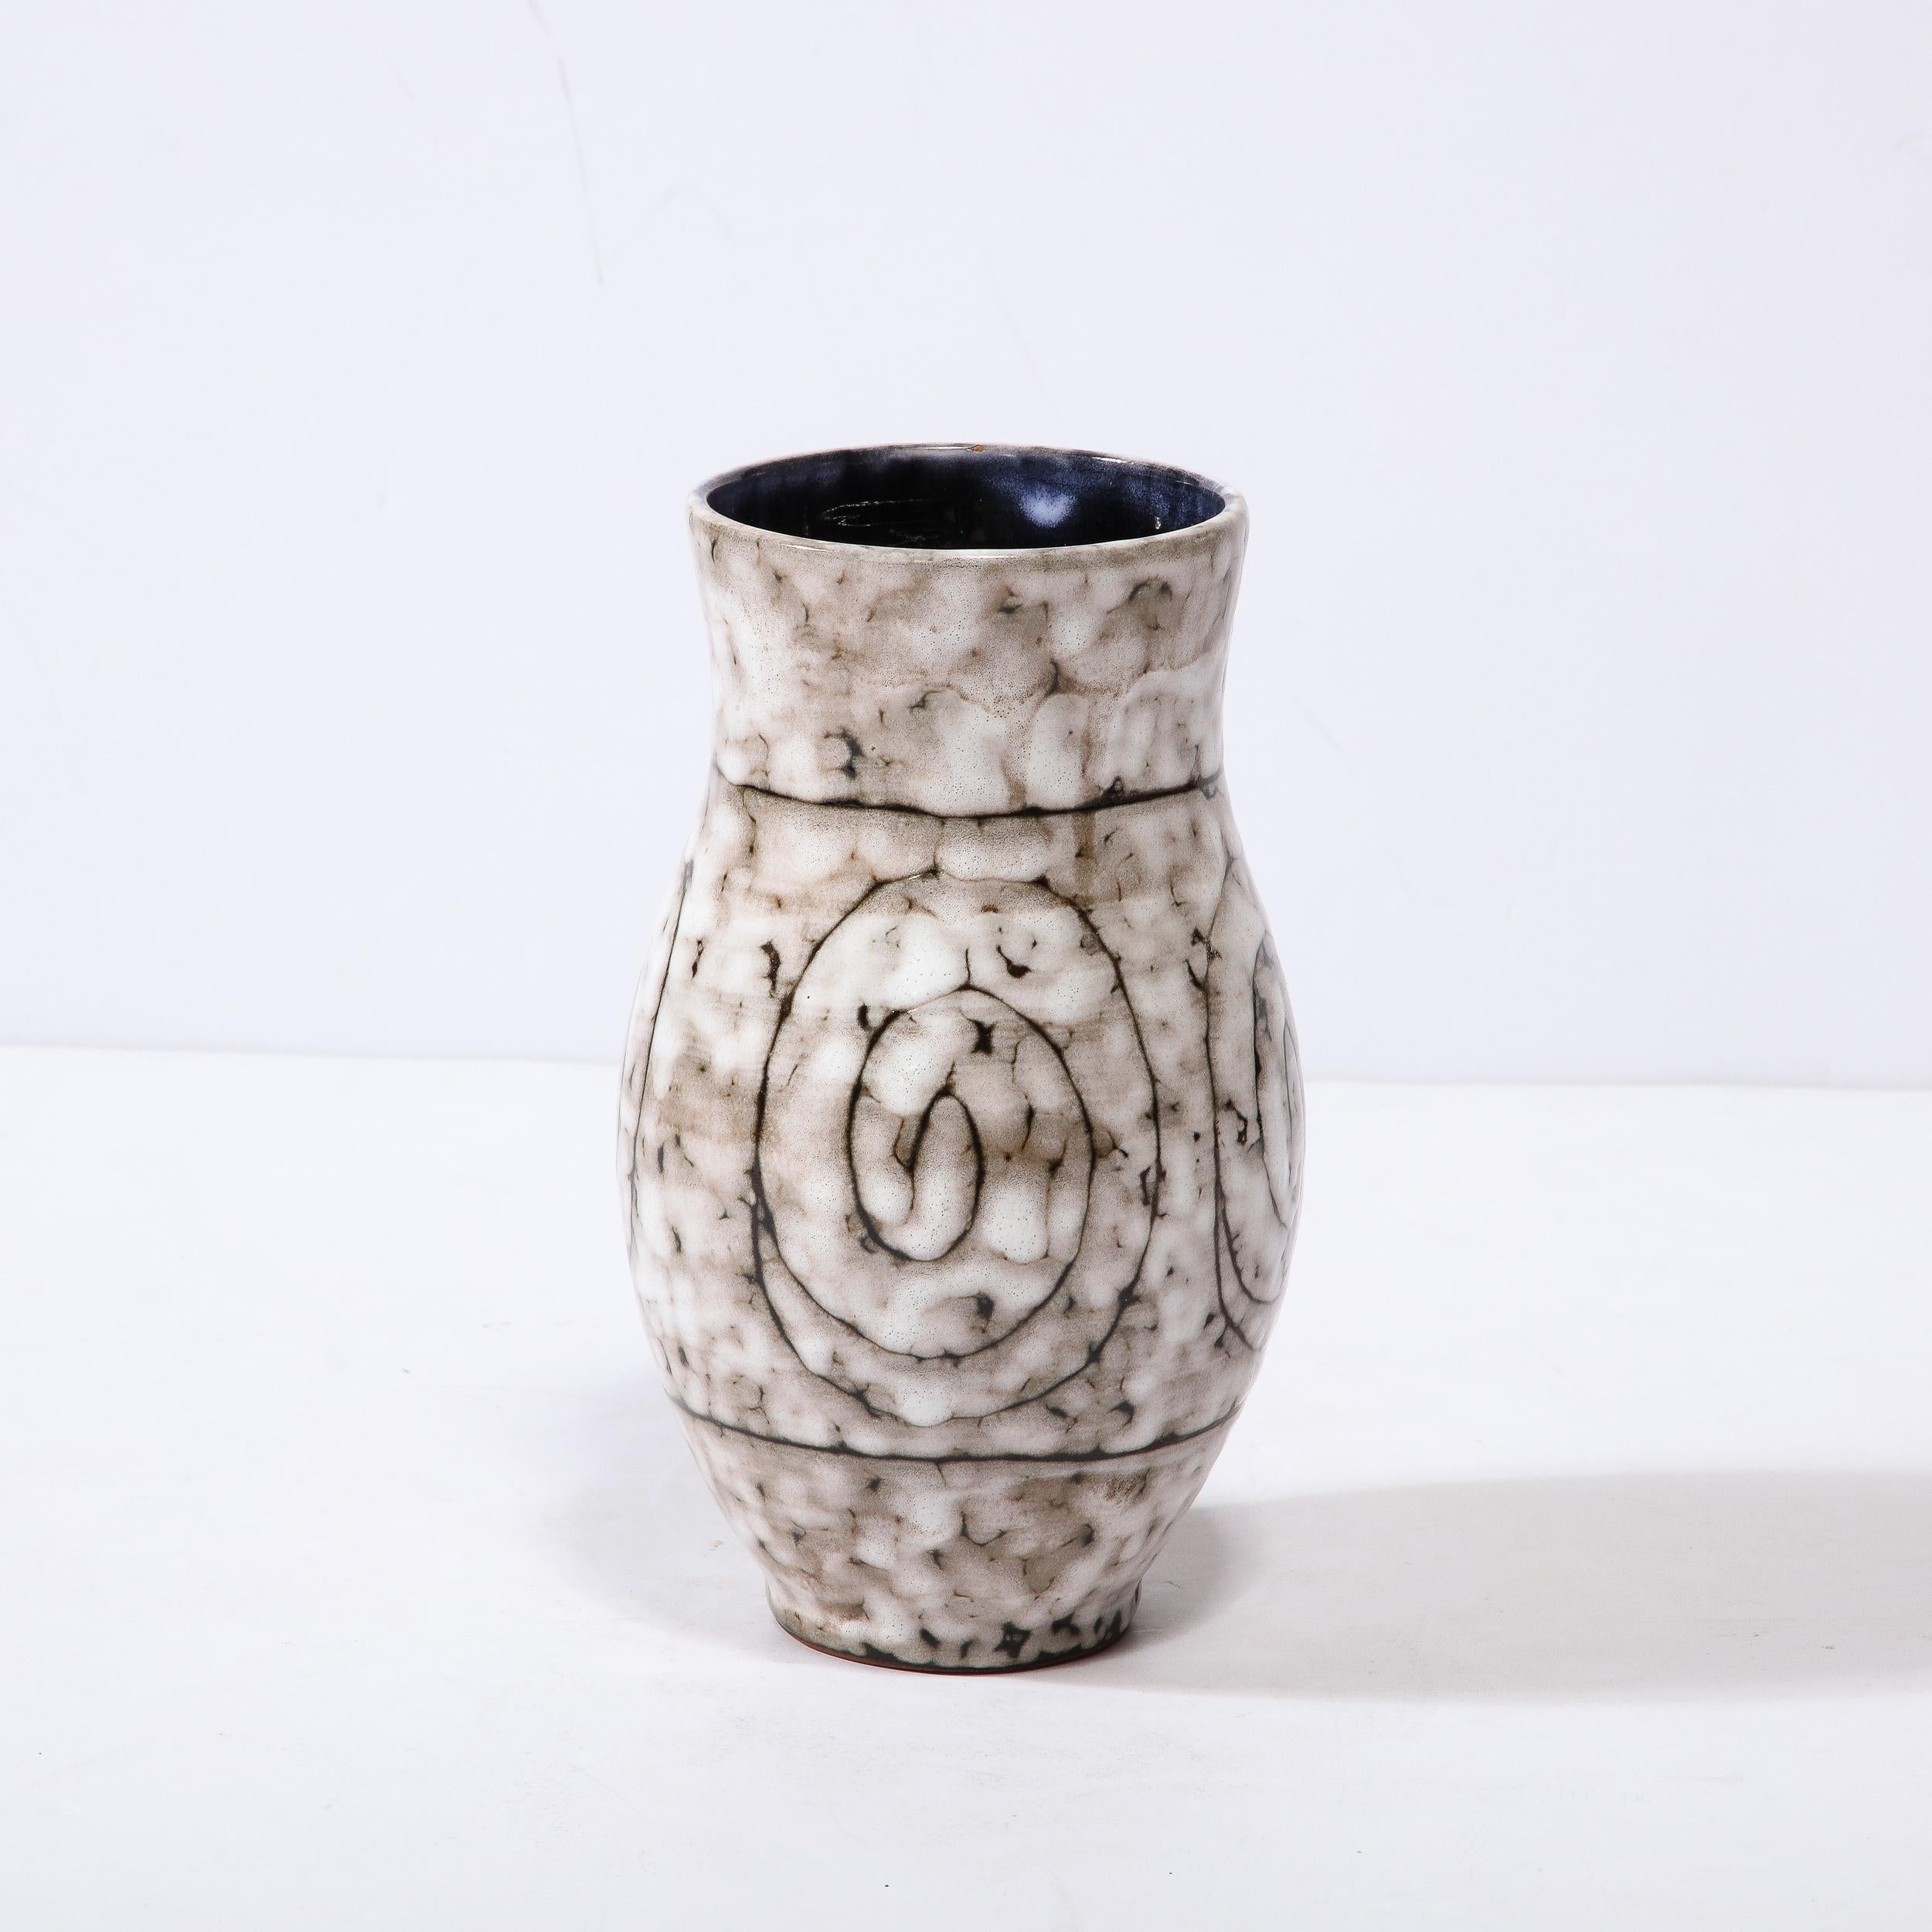 Diese Mid-Century Modernist Keramik Vase W / Coiled Motiv ist ein schönes Beispiel der Nachkriegszeit europäischen Keramik, realisiert in Hódmezovasarhely Majolikagyár, Ungarn Circa 1960. Die Oberfläche jeder Vase hat eine atemberaubende Struktur